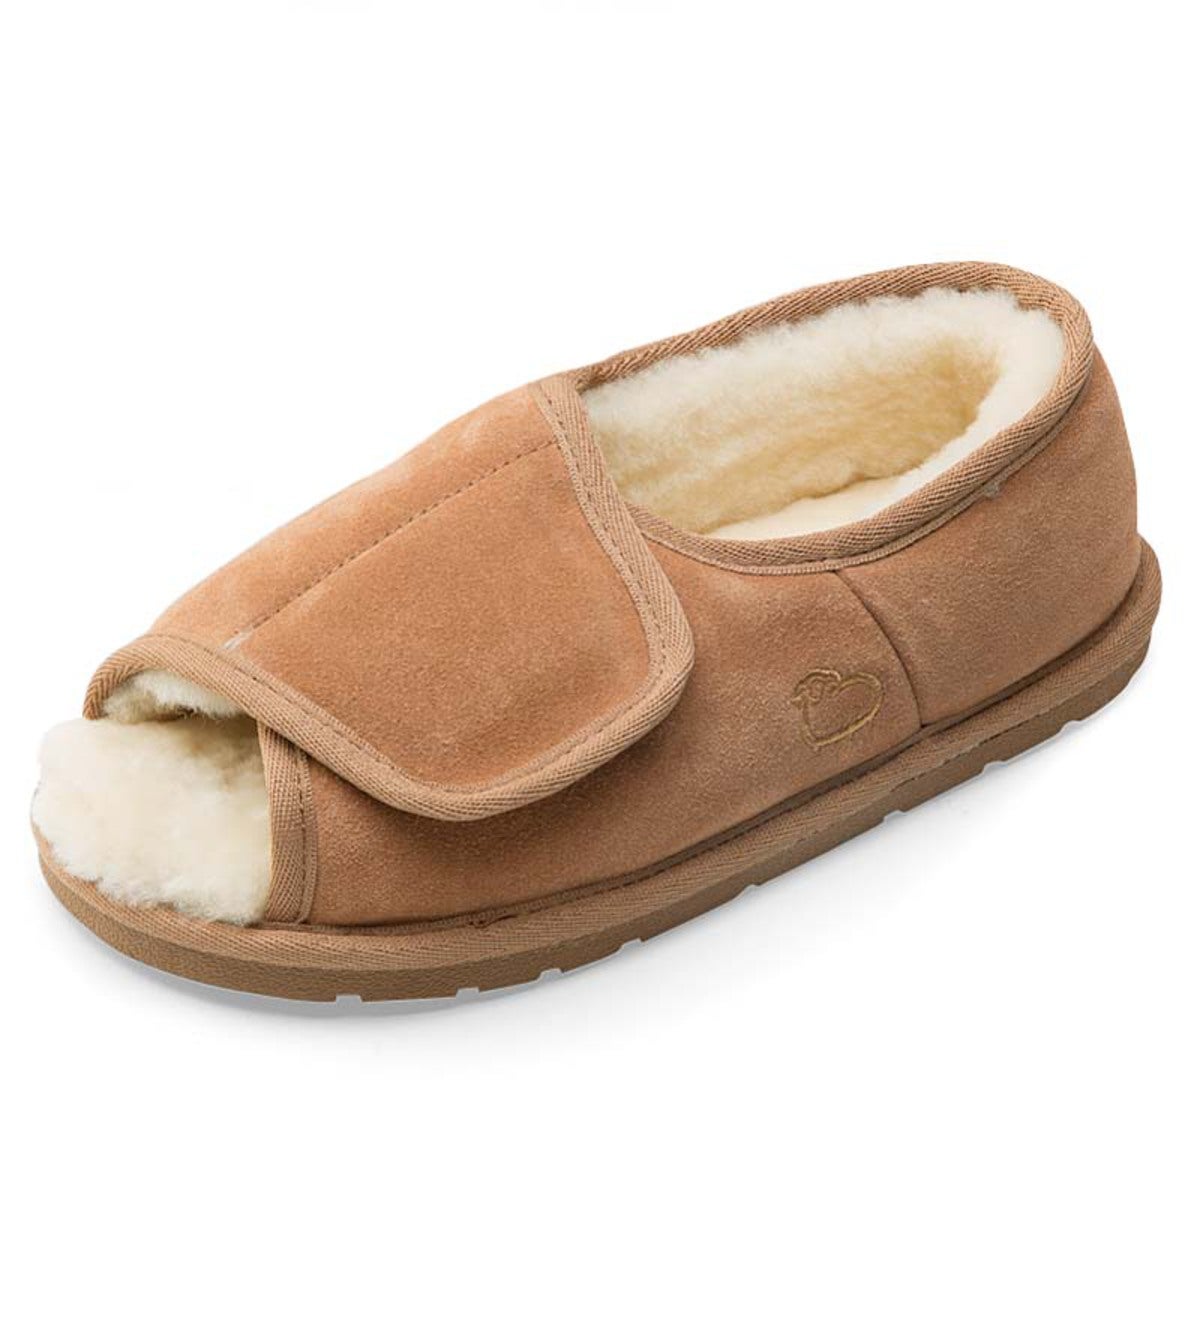 women's narrow slippers sheepskin